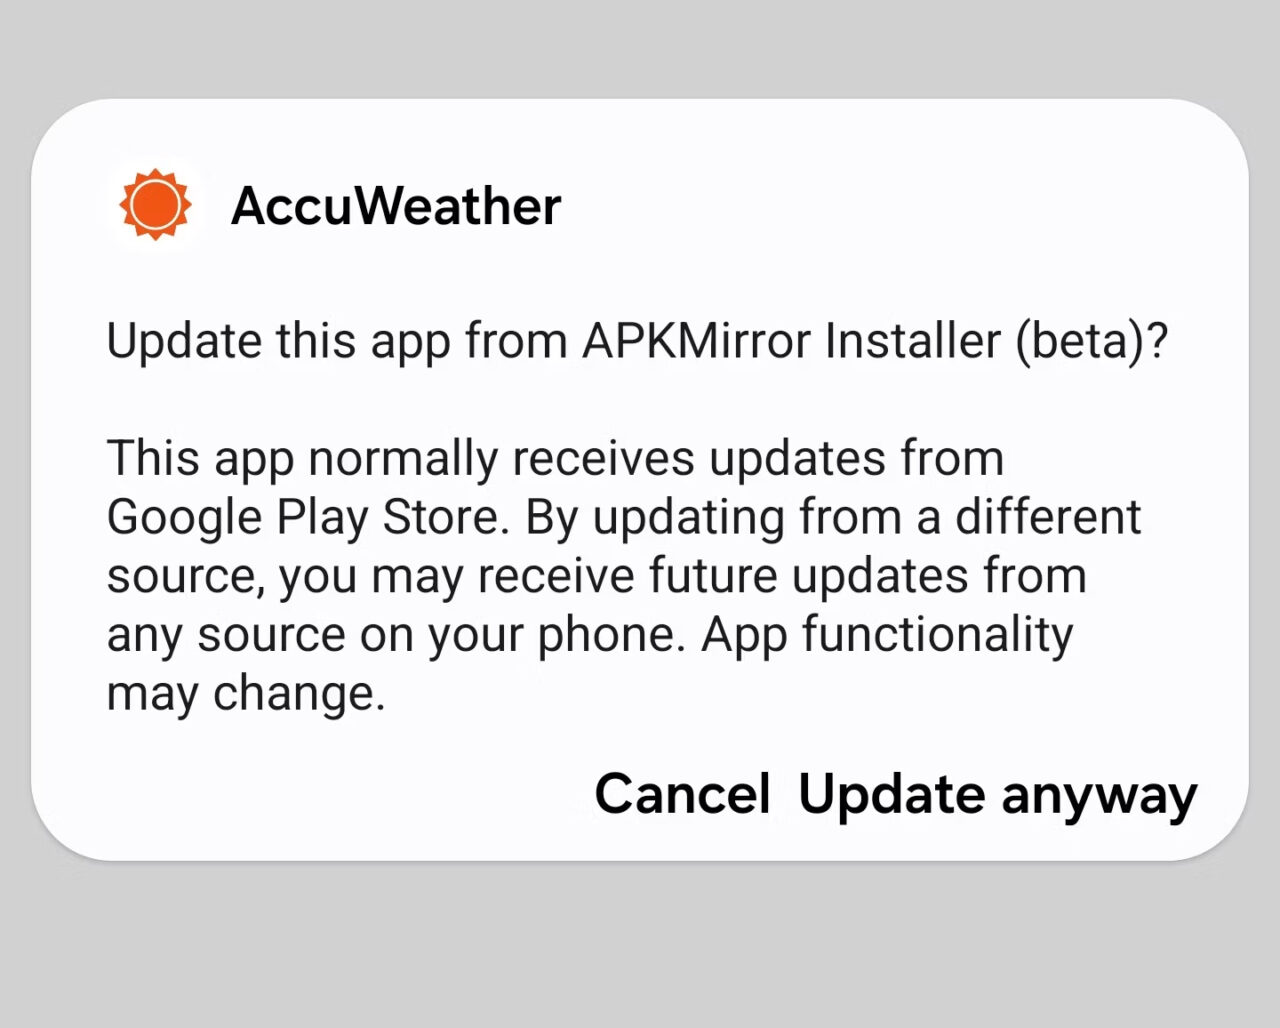 Komunikat aktualizacyjny aplikacji AccuWeather z zapytaniem o aktualizację pochodzącą z APKMirror Installer (beta), z informacją o zwykłym źródle aktualizacji z Google Play Store i możliwymi zmianami w funkcjonalności aplikacji. Na dole są przyciski: "Anuluj" i "Aktualizuj mimo to".